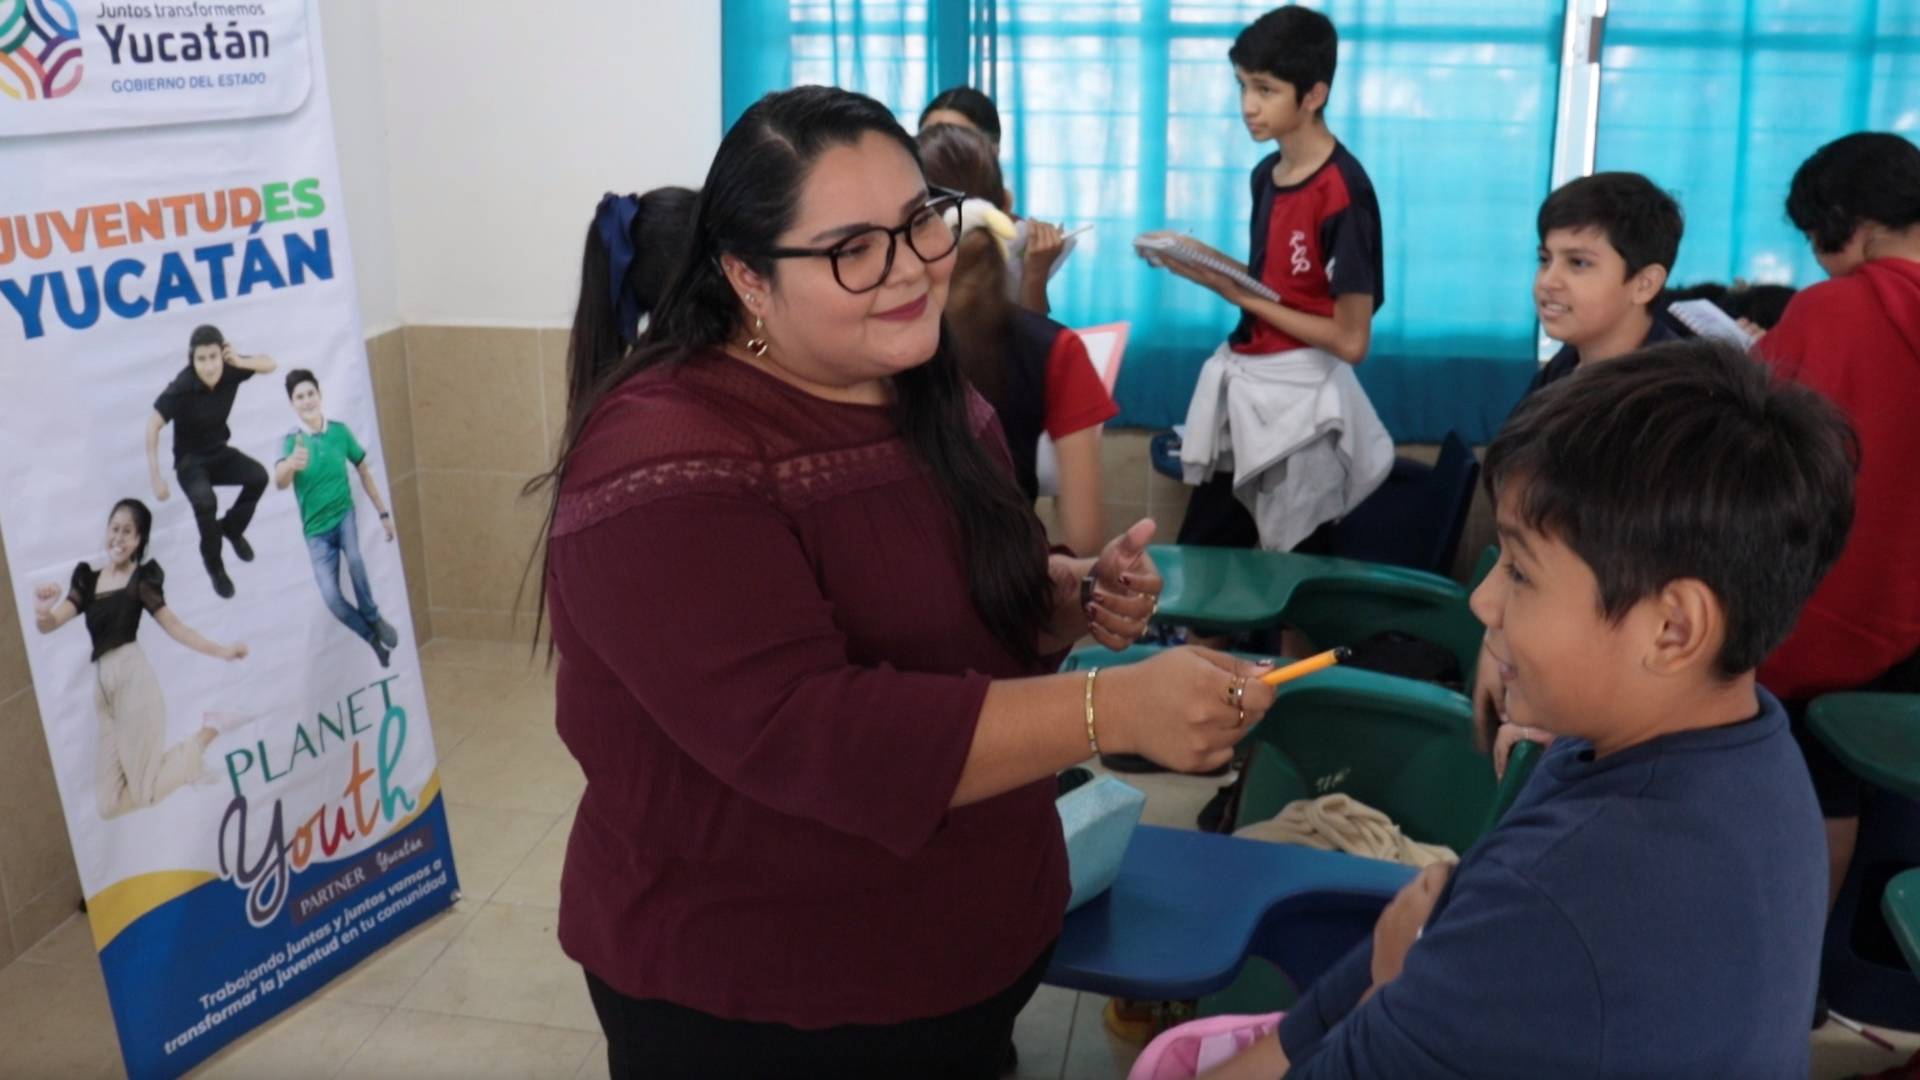 Juventudes con más habilidades emocionales y confianza con sus familias como resultado del programa estatal “Juventudes Yucatán”